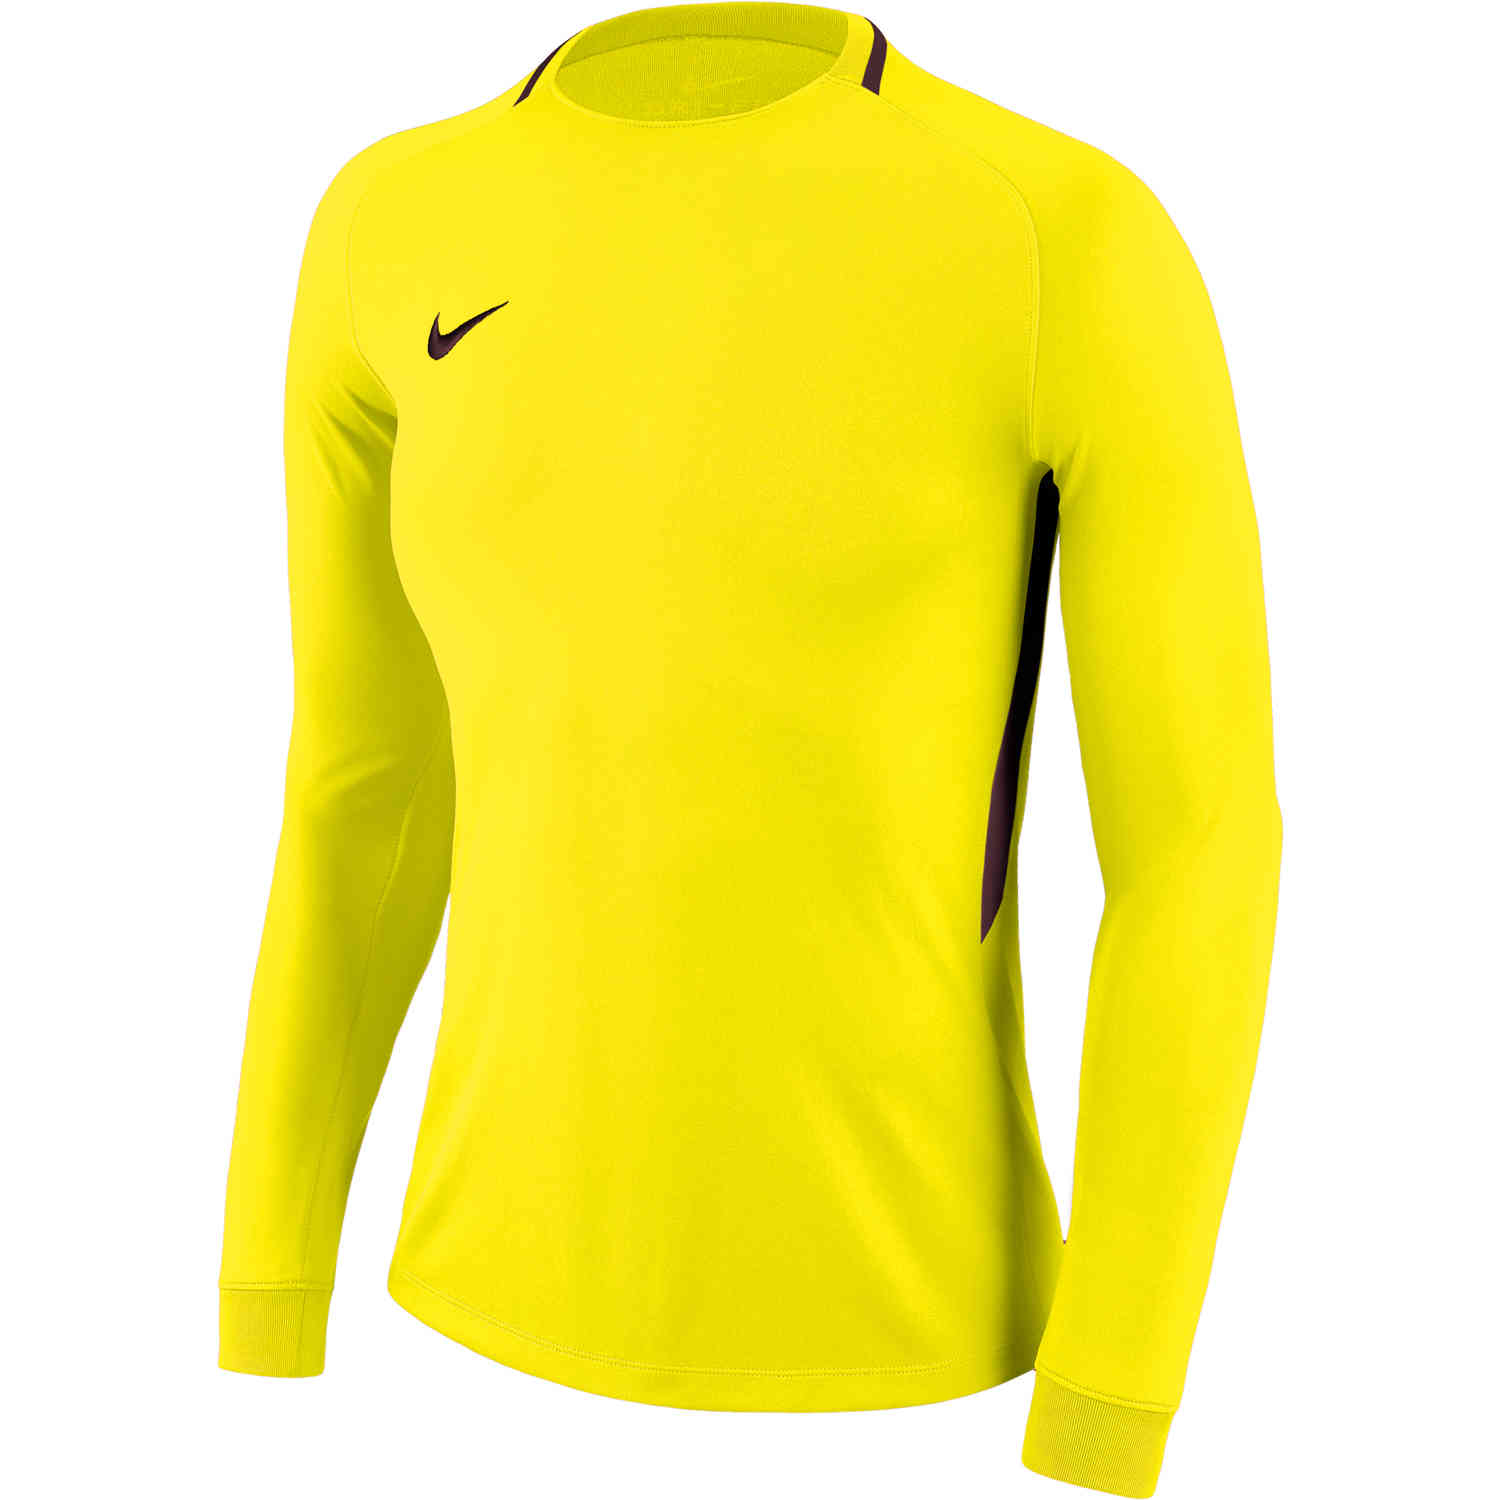 nike women's goalkeeper jersey